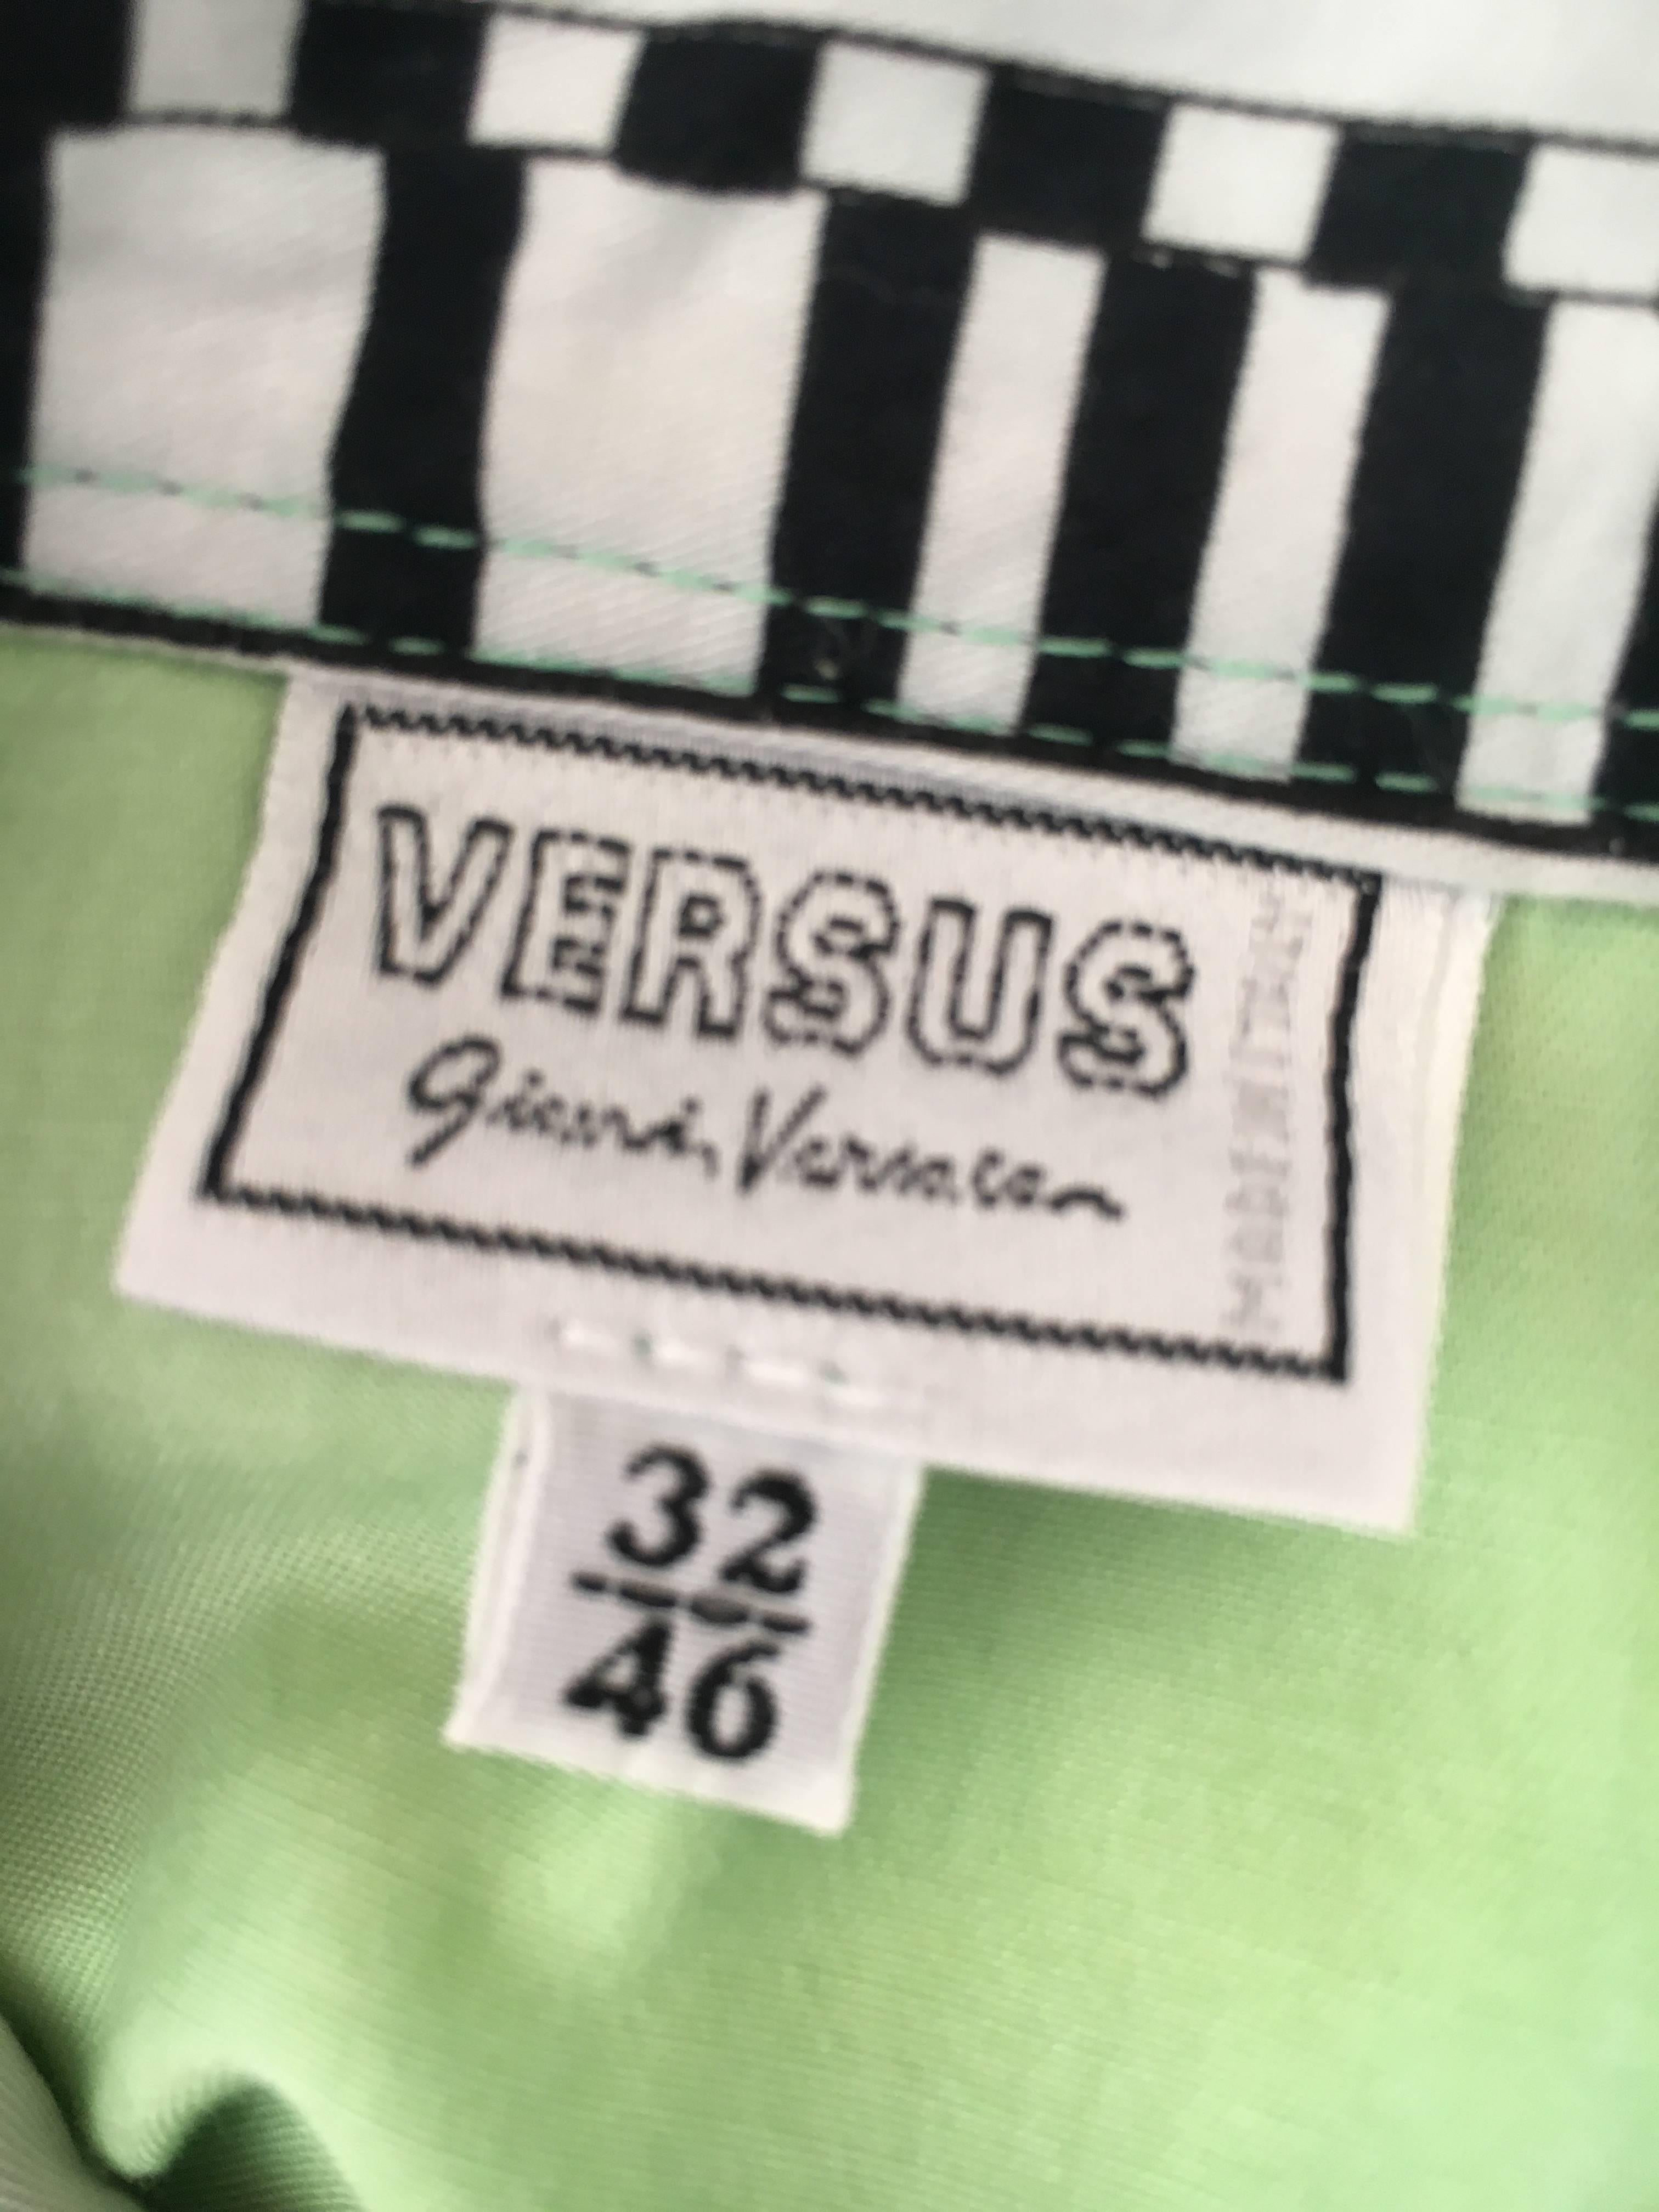 Versus Gianni Versace Rare1993 Cotton Indian Print Men's Large Shirt  4